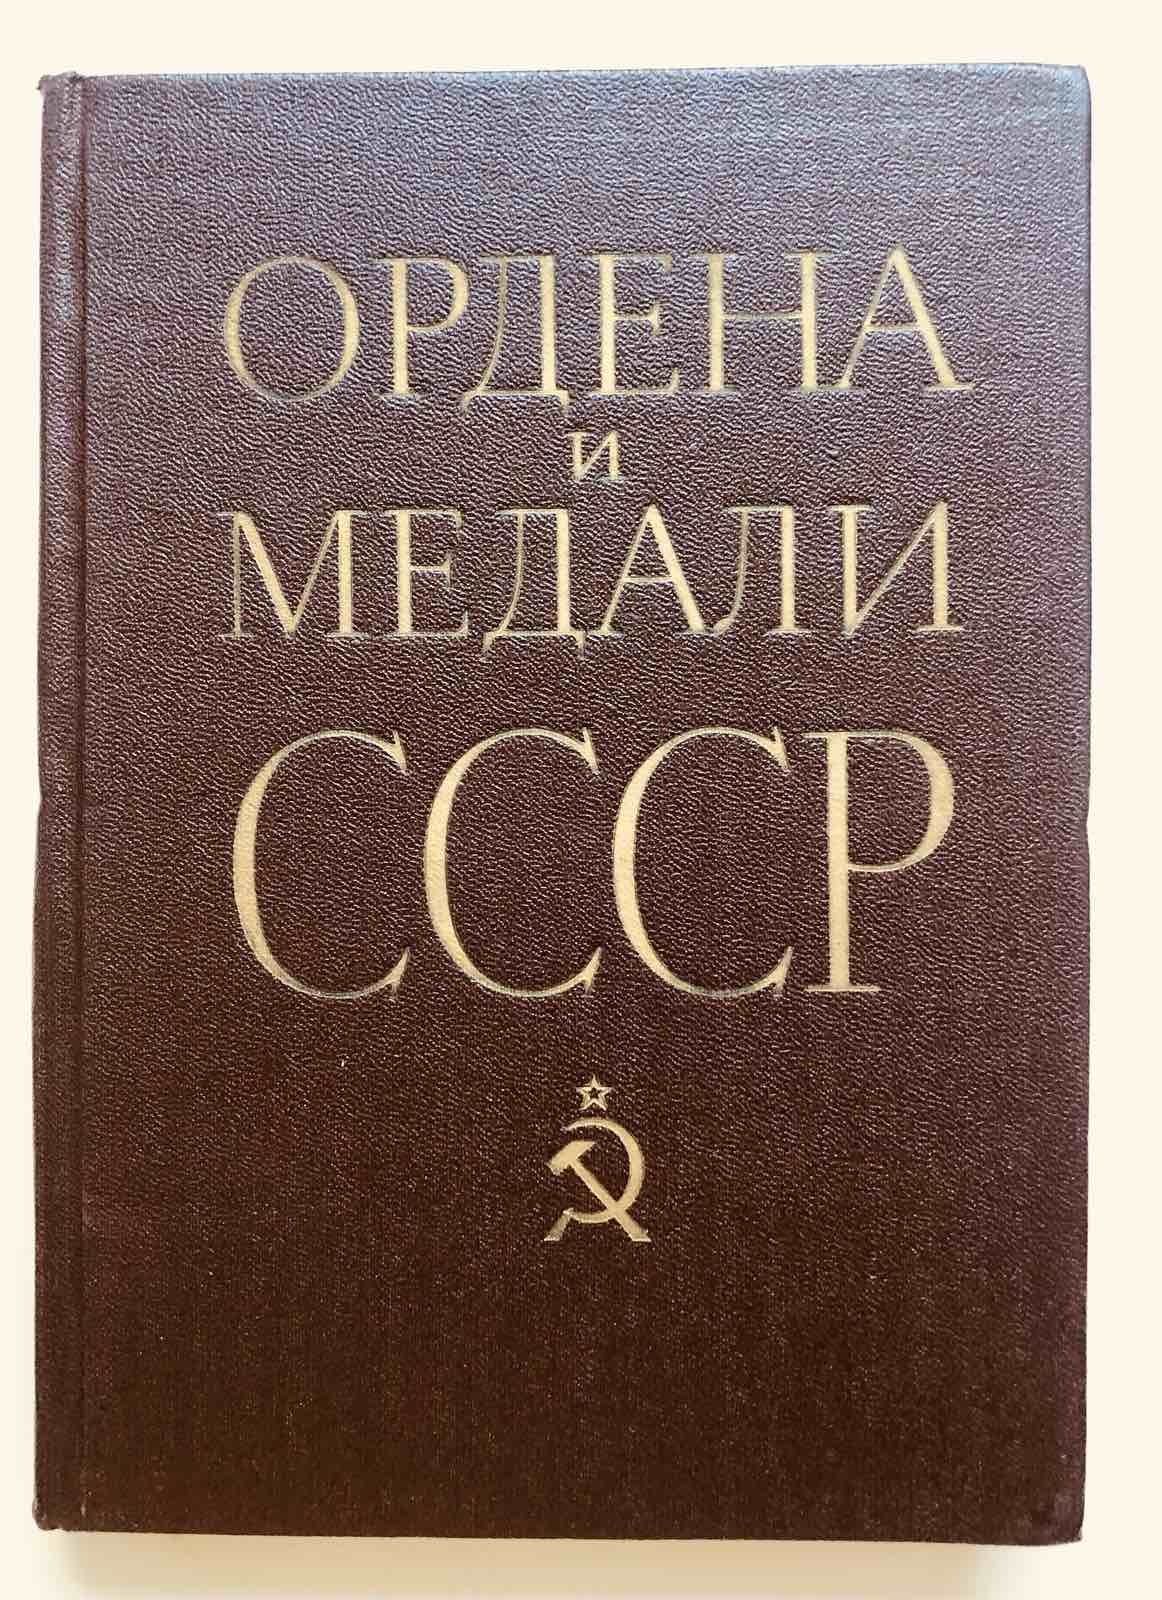 Ордена и медали СССР. Военное издательство 1983